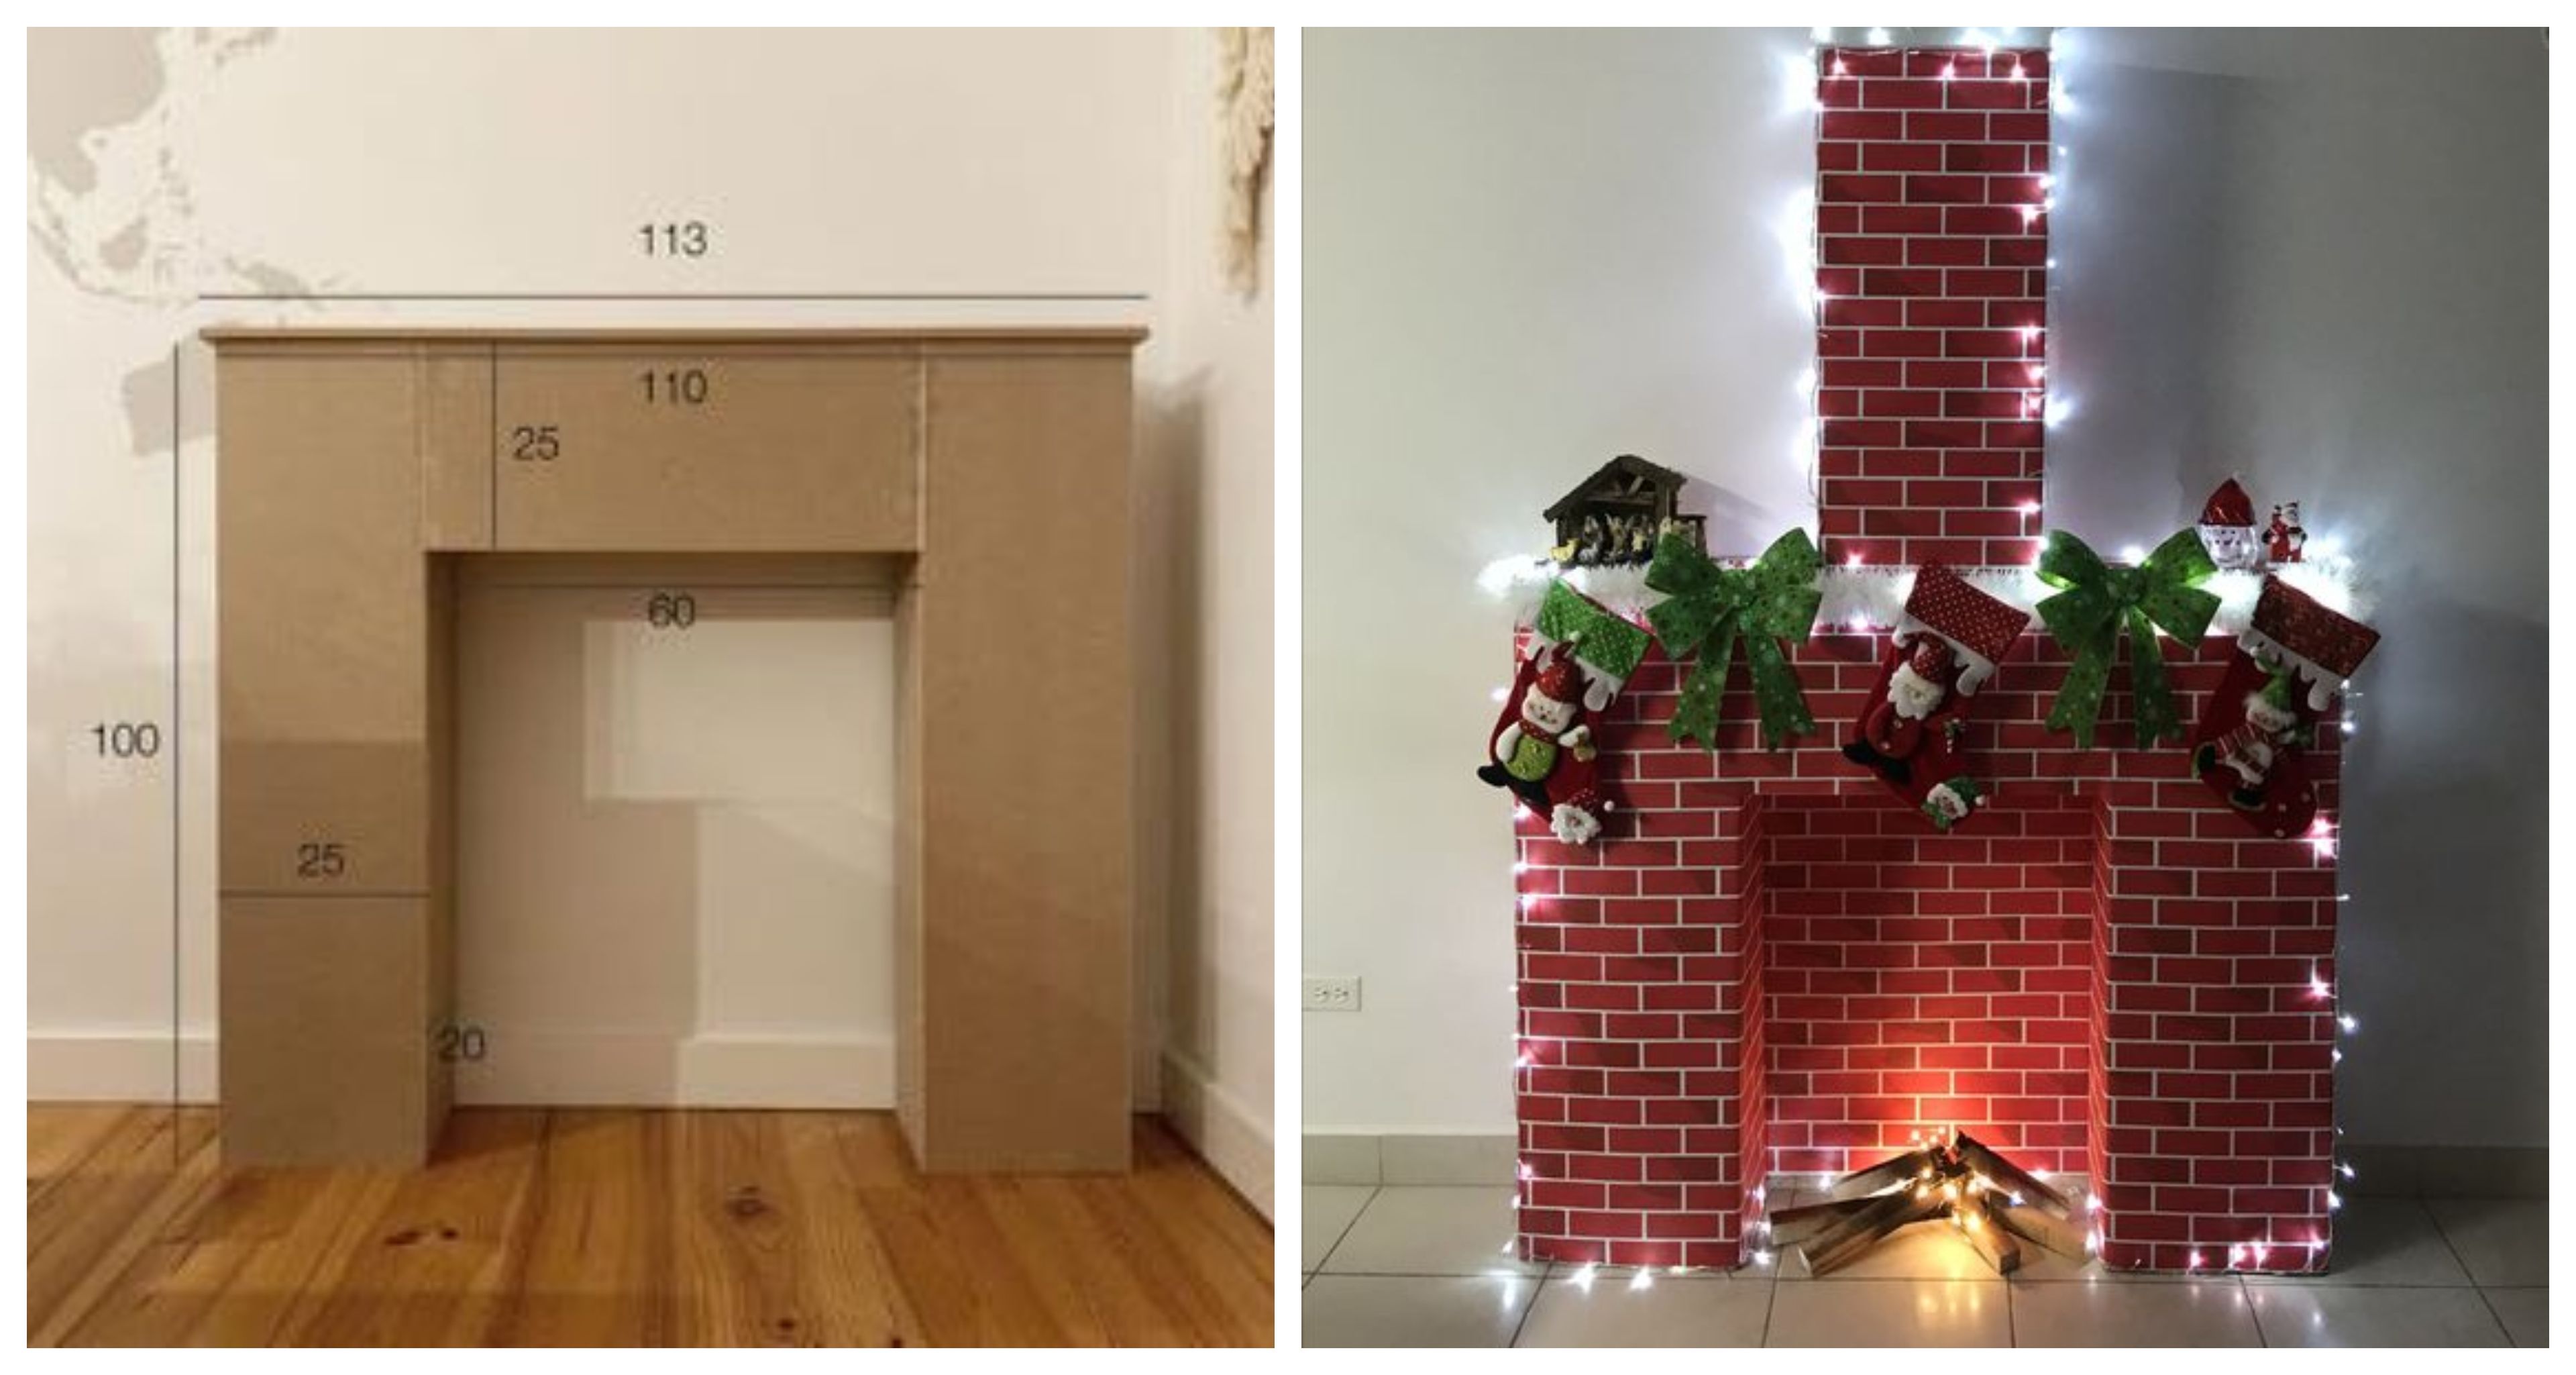 compacto Contribuir Ladrillo Cómo hacer una chimenea con cartón paso a paso como decoración navideña |  Business Insider España